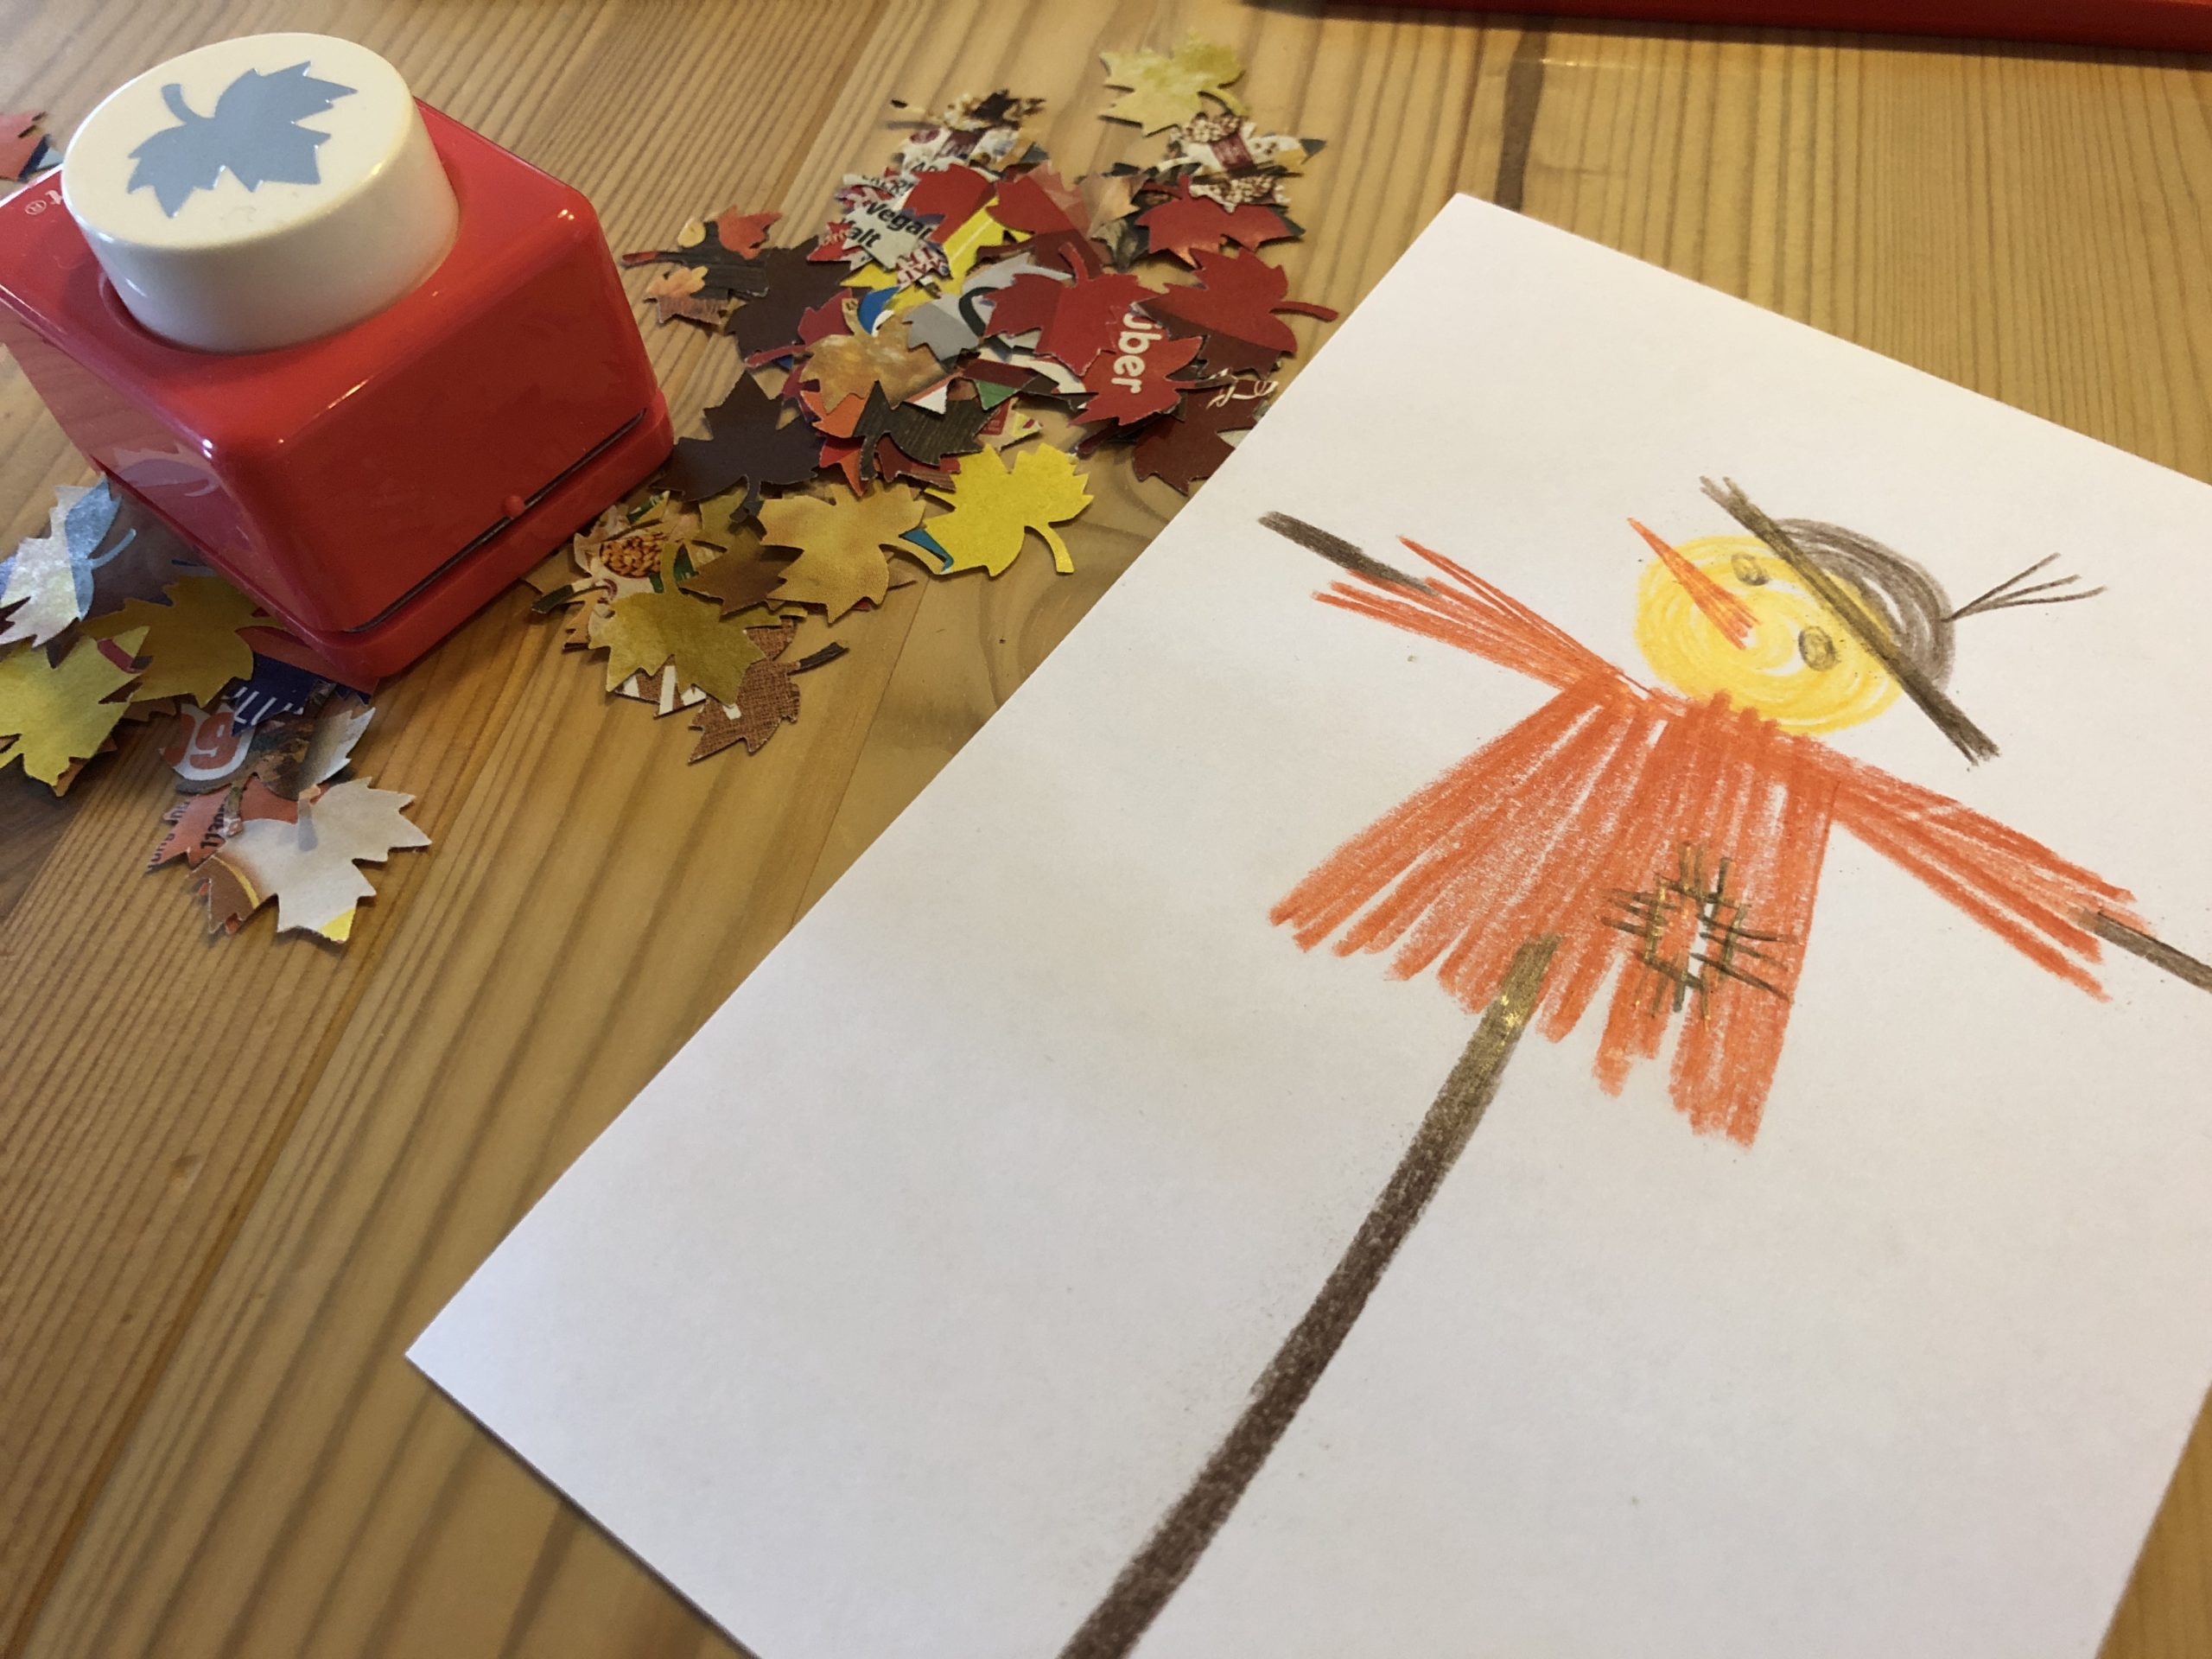 Bild zum Schritt 4 für die Kinder-Beschäftigung: 'Wenn ihr eine Vogelscheuche gemalt habt, legt sie in einen...'